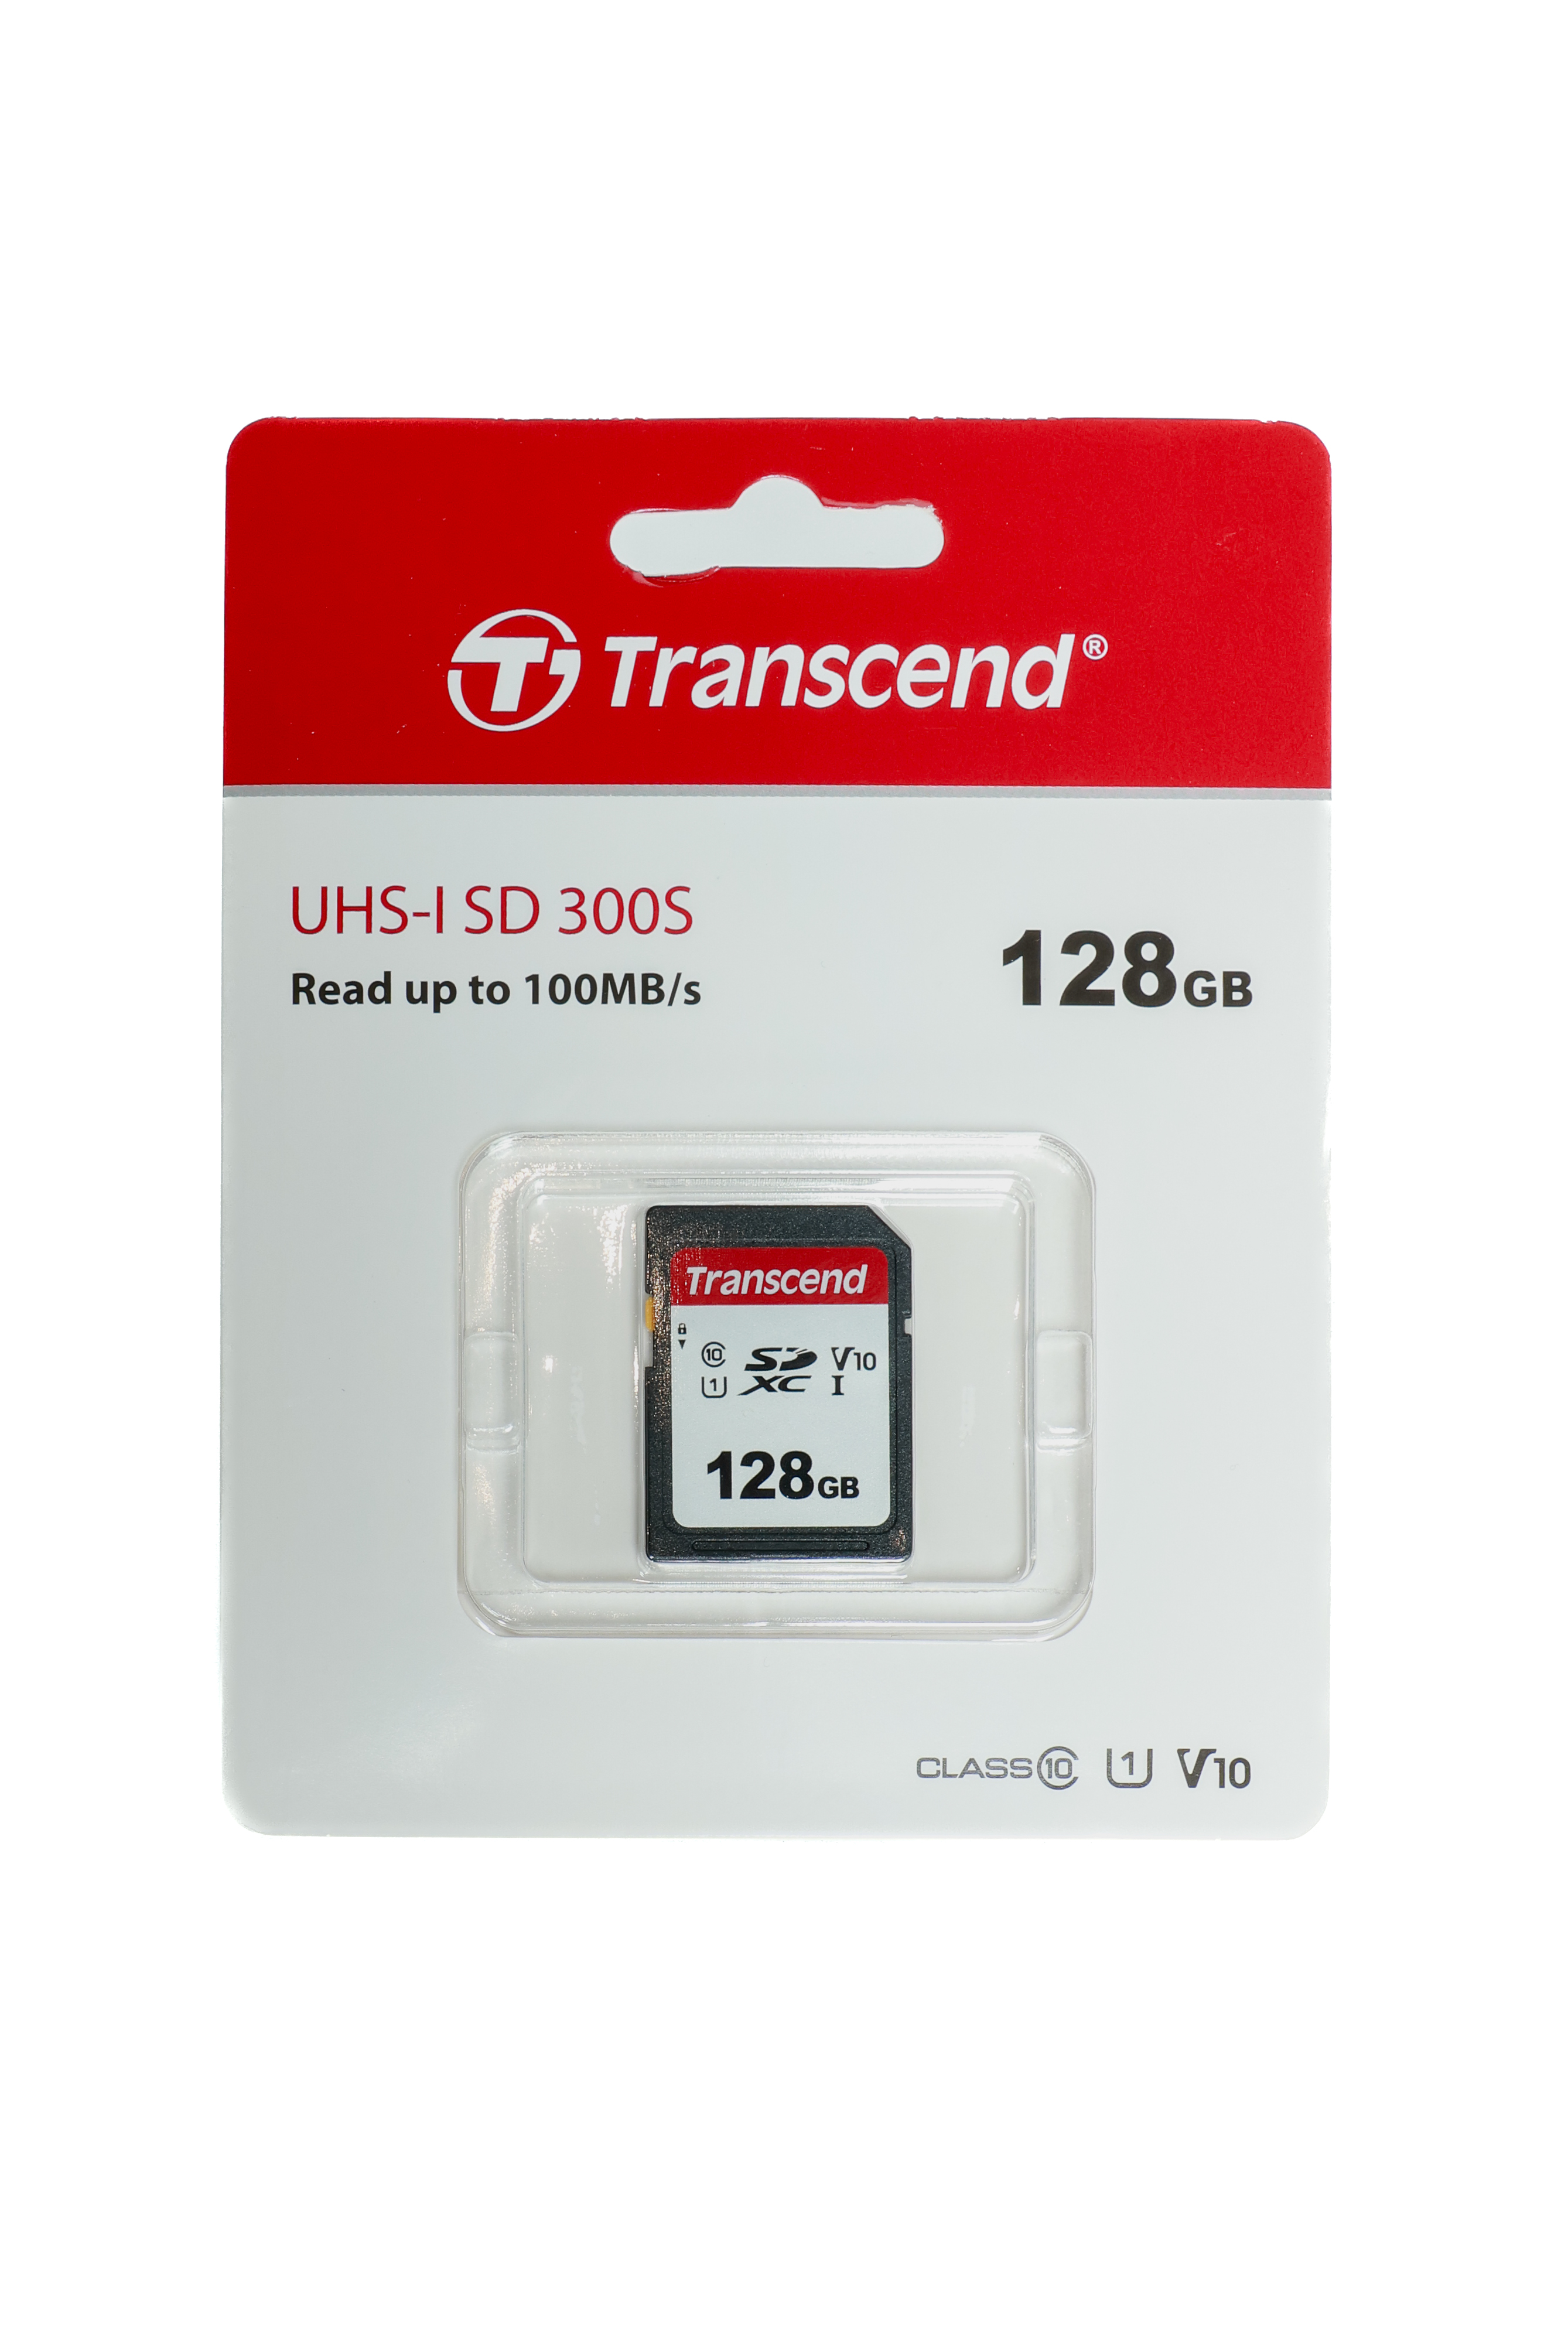 UHS-I SD 300S, 128 GB.